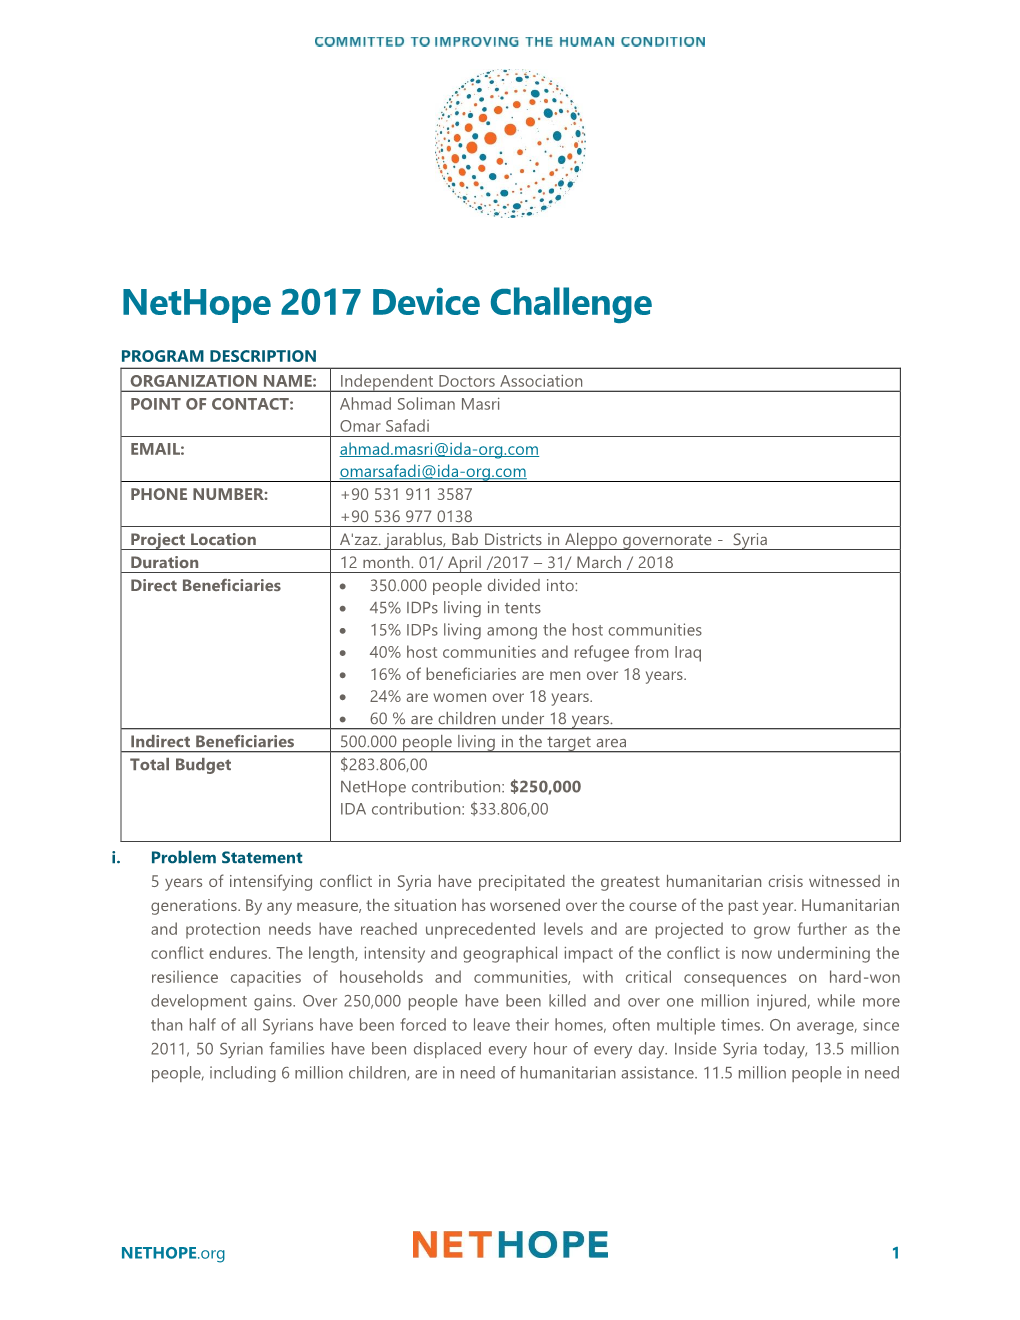 Nethope 2017 Device Challenge